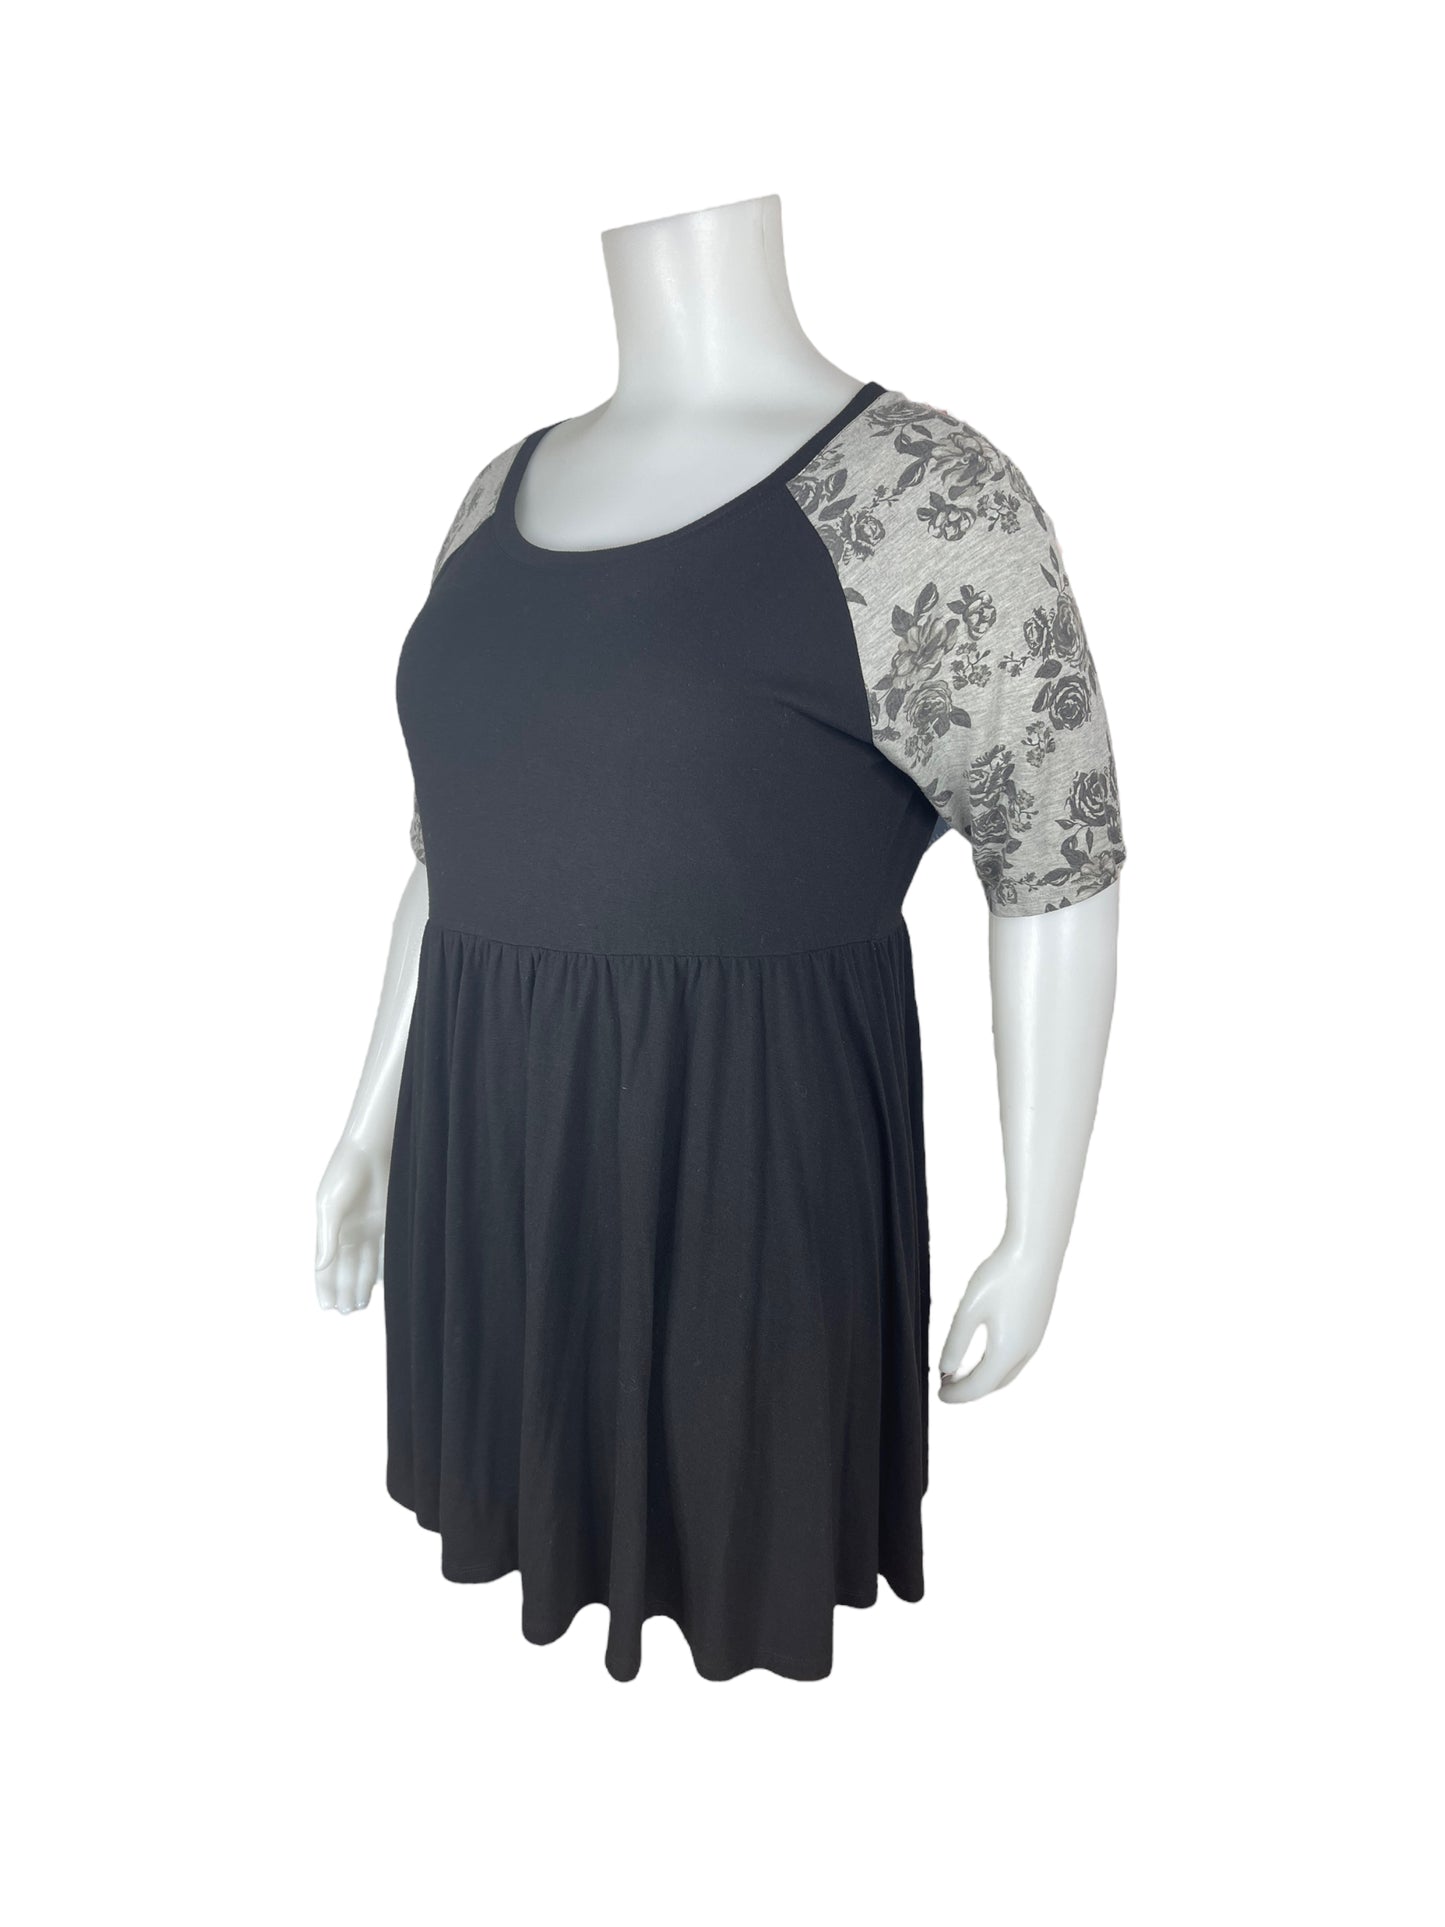 “Torrid” Black Dress w/ Grey Floral 3/4 Sleeves (3)